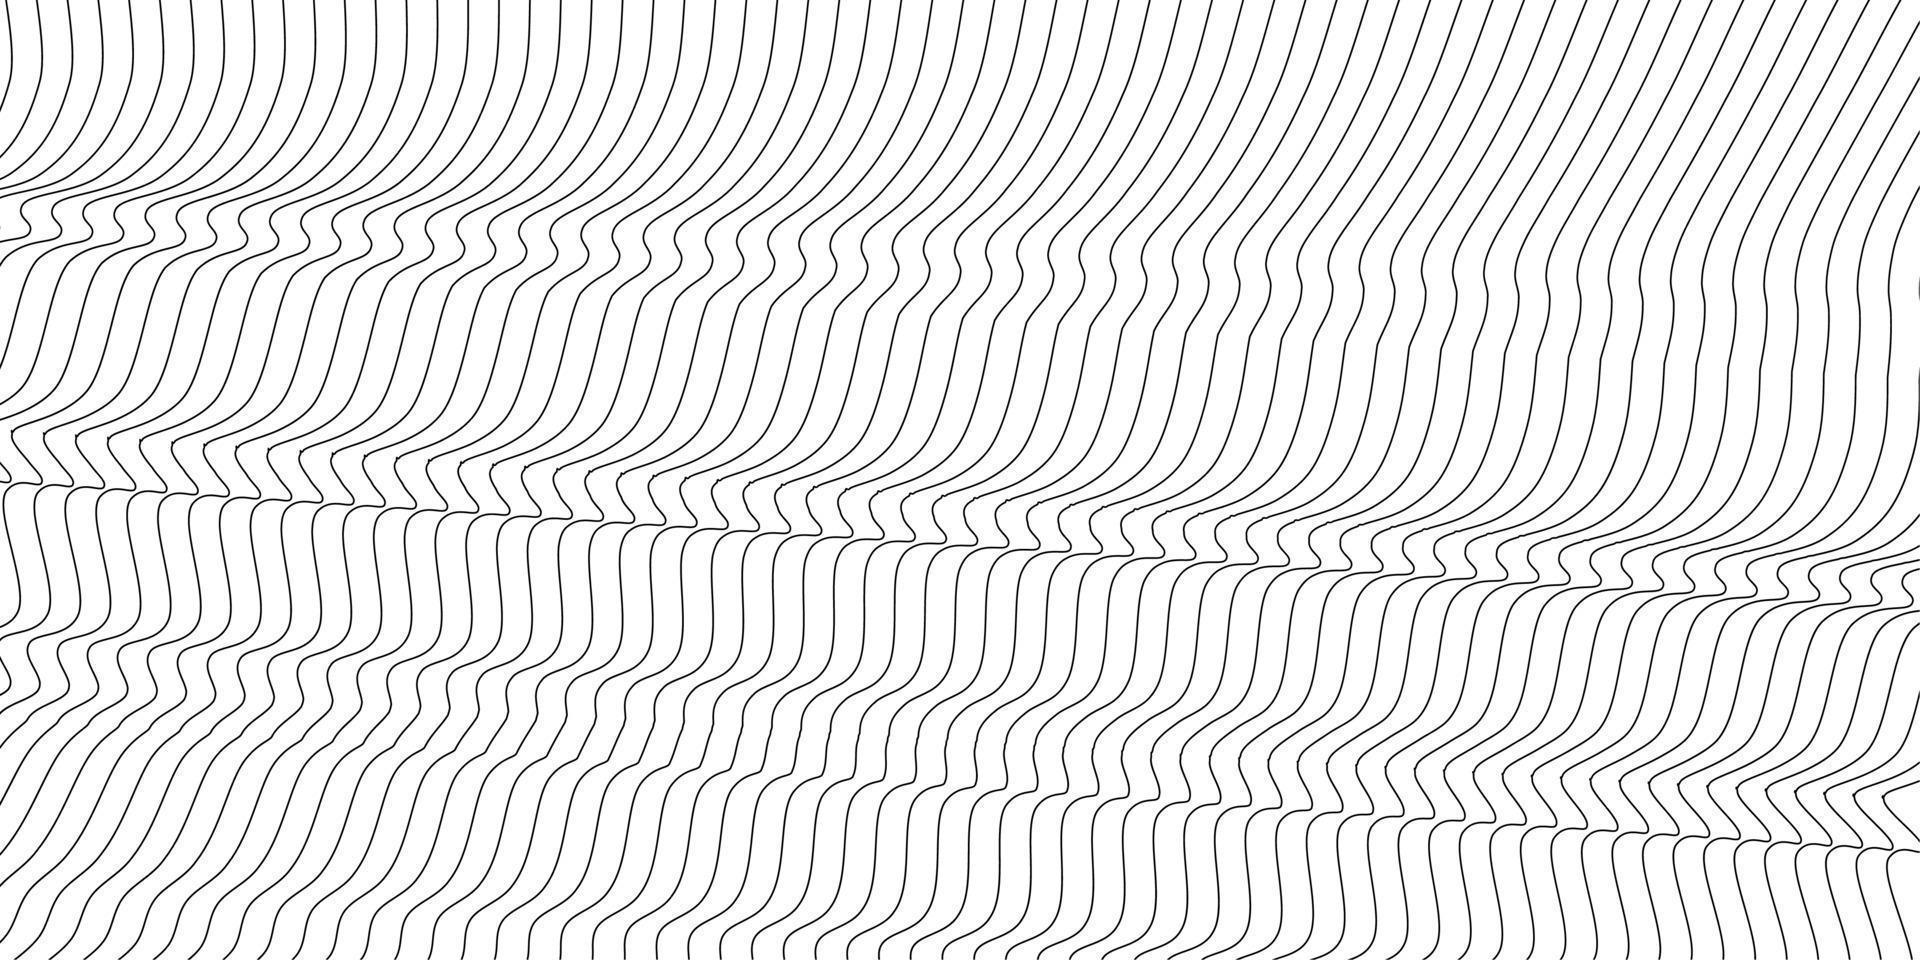 abstrakter wellenförmiger Hintergrund. dünne Linie auf weiß vektor